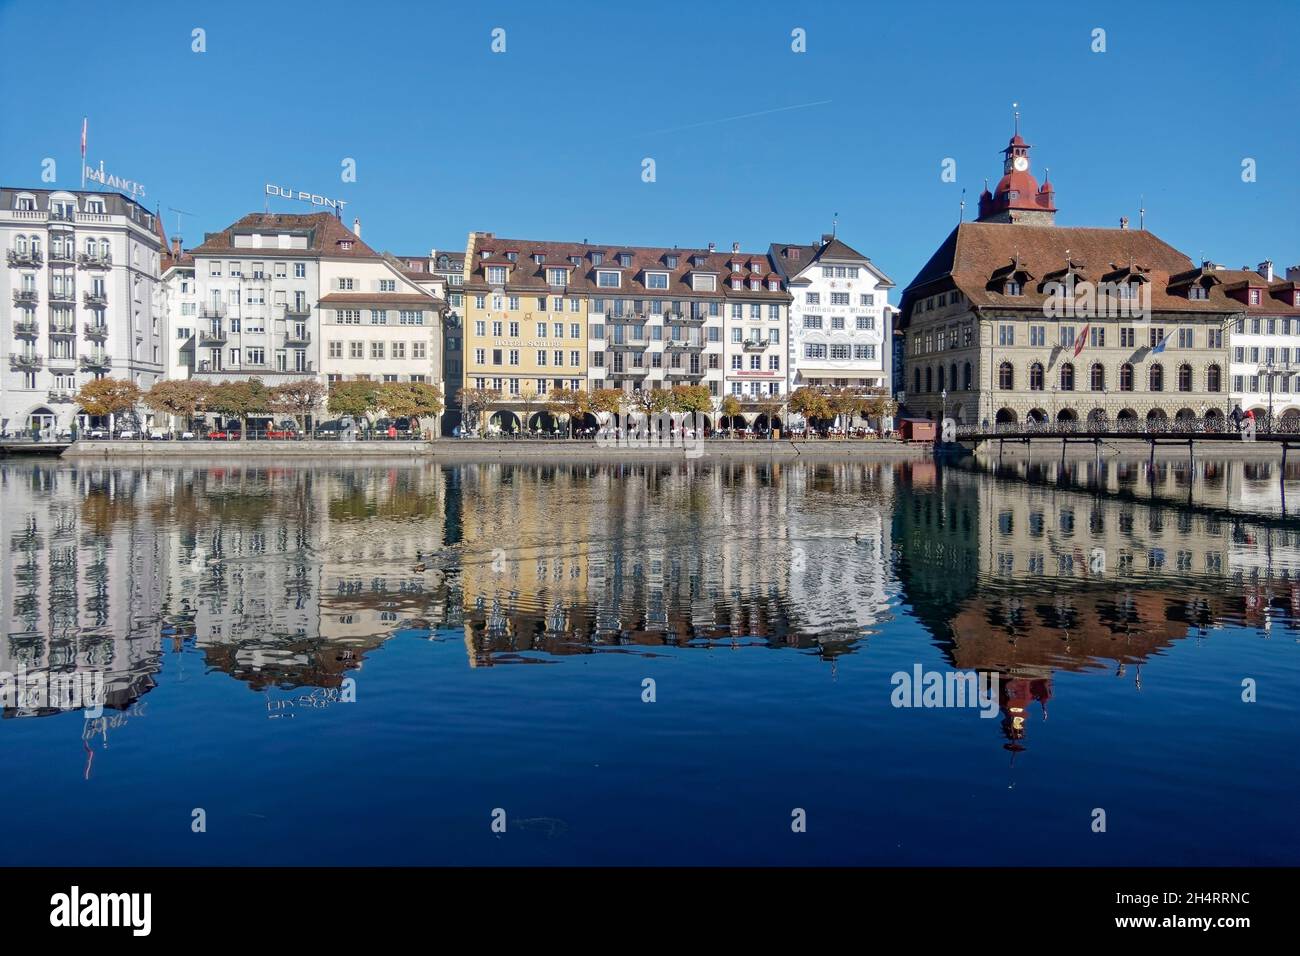 Luzern im Herbst, Fluss Reuss, Altstadt, Schweiz Foto Stock